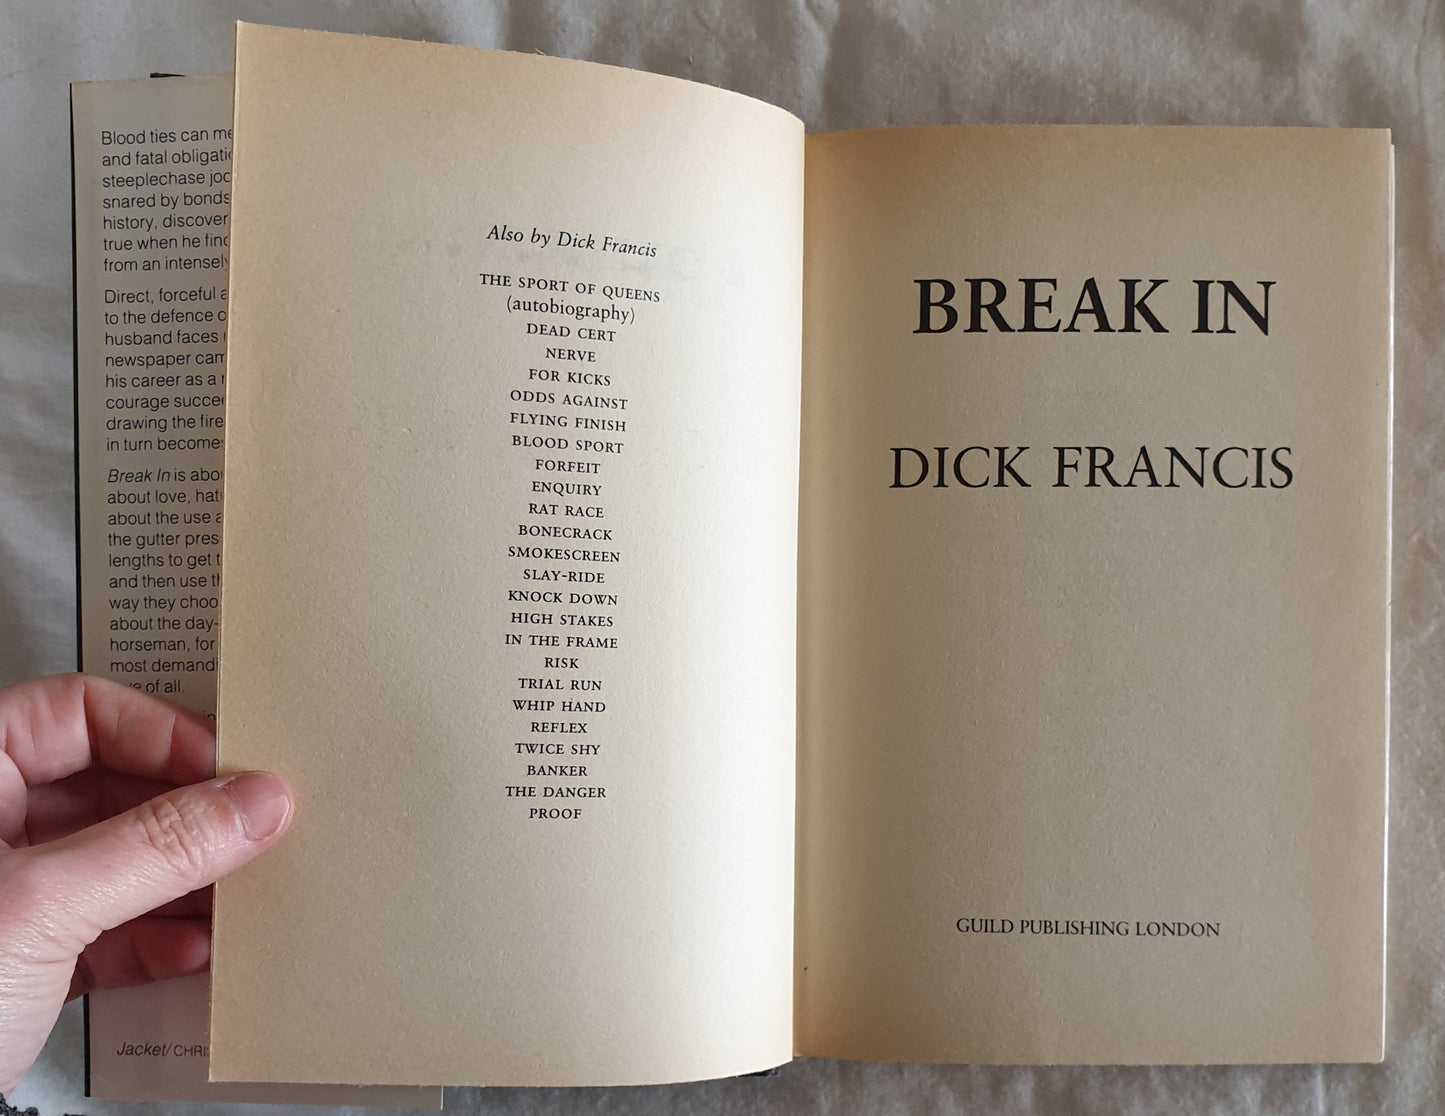 Break In by Dick Francis